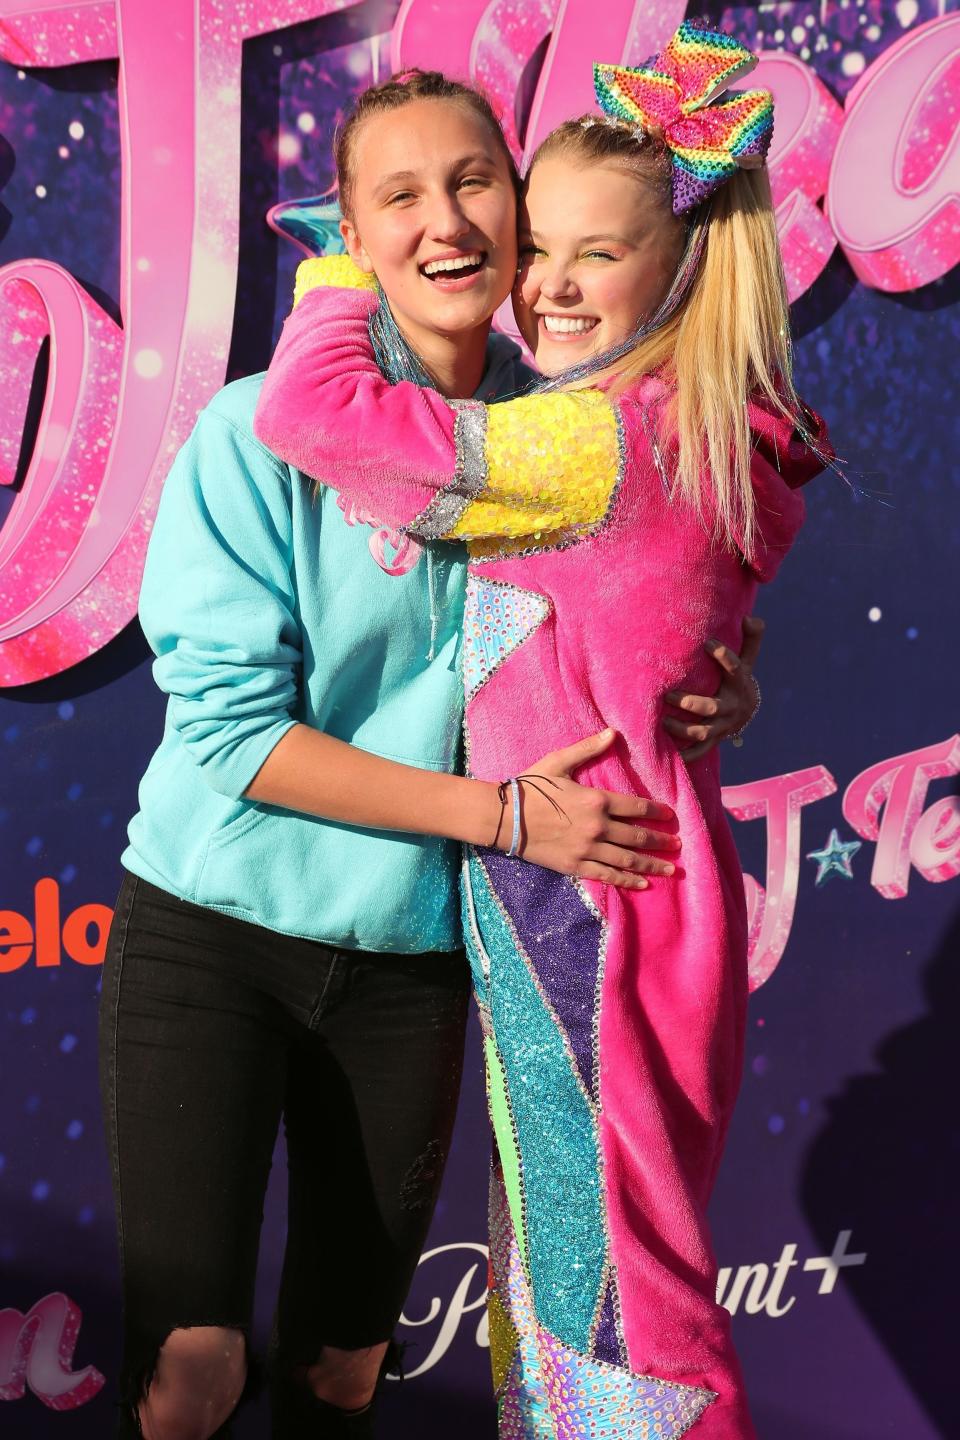 Jojo hugging Kylie at her movie premiere